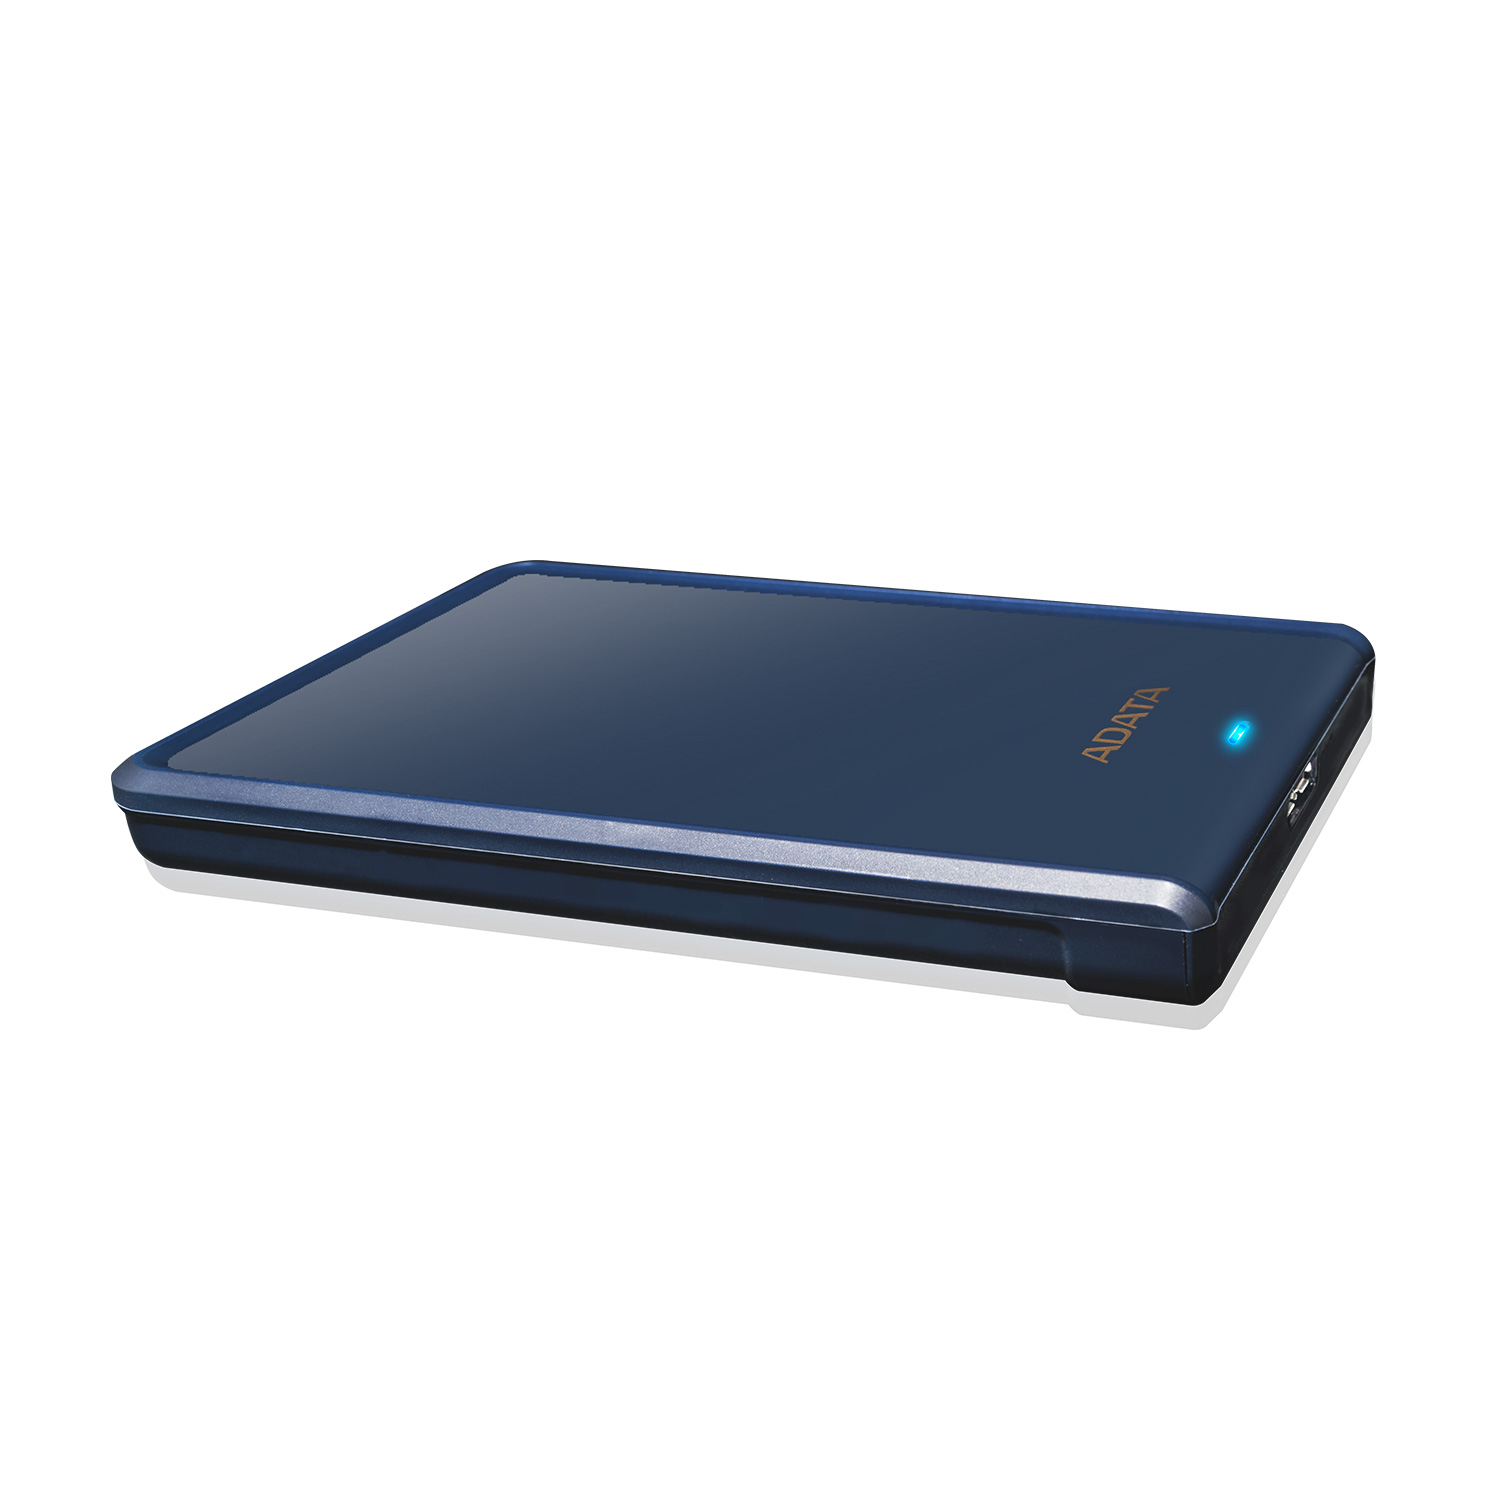 ADATA HDD HD620S, 1 TB, USB 3.2 (AHV620S-1TU31-CBL) externý pevný disk, modrá